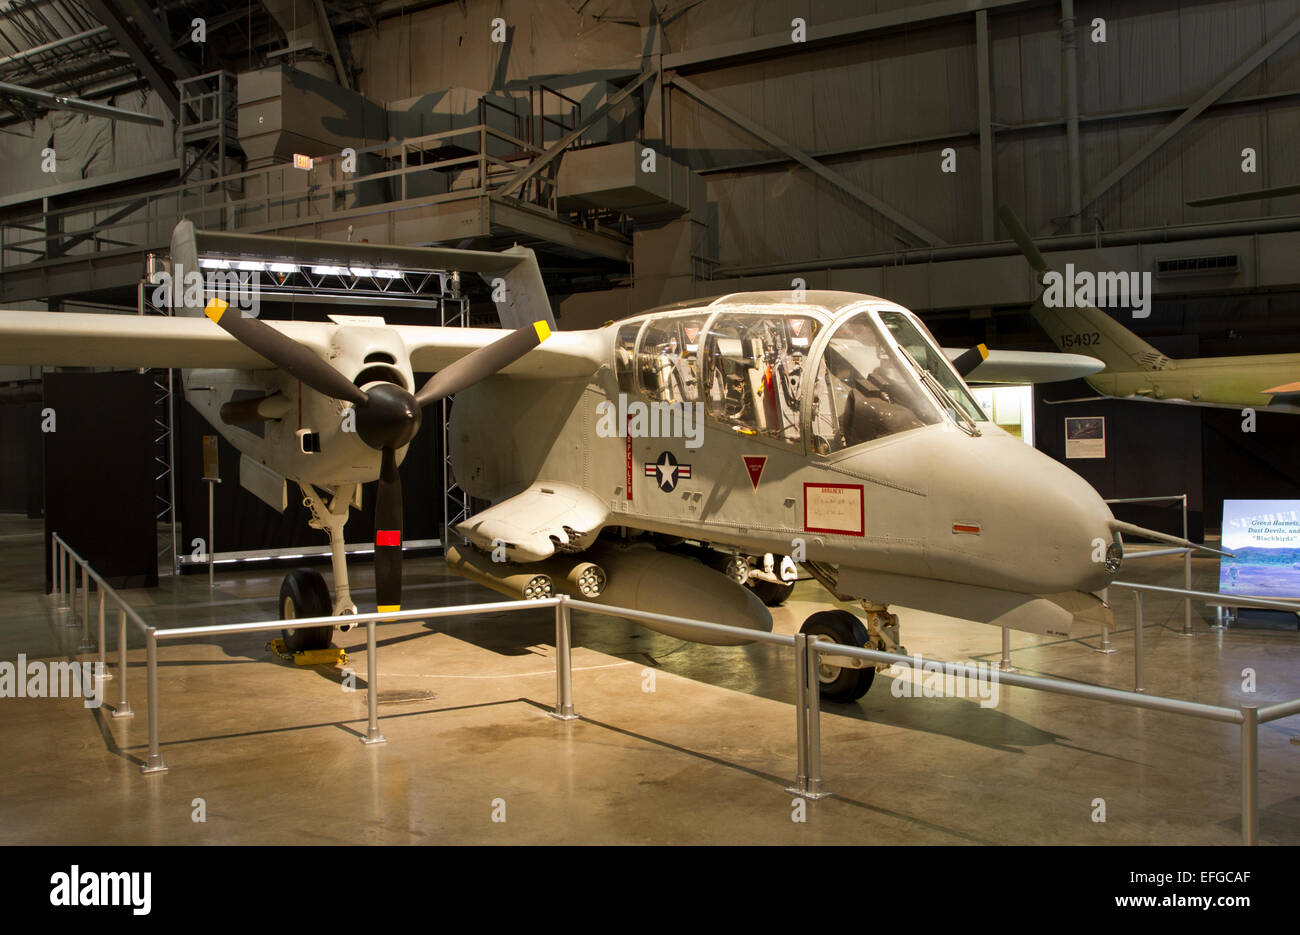 OV-10A "Bronco" Flugzeuge im Museum der Luftwaffe, Dayton Ohio Vereinigte Staaten Stockfoto